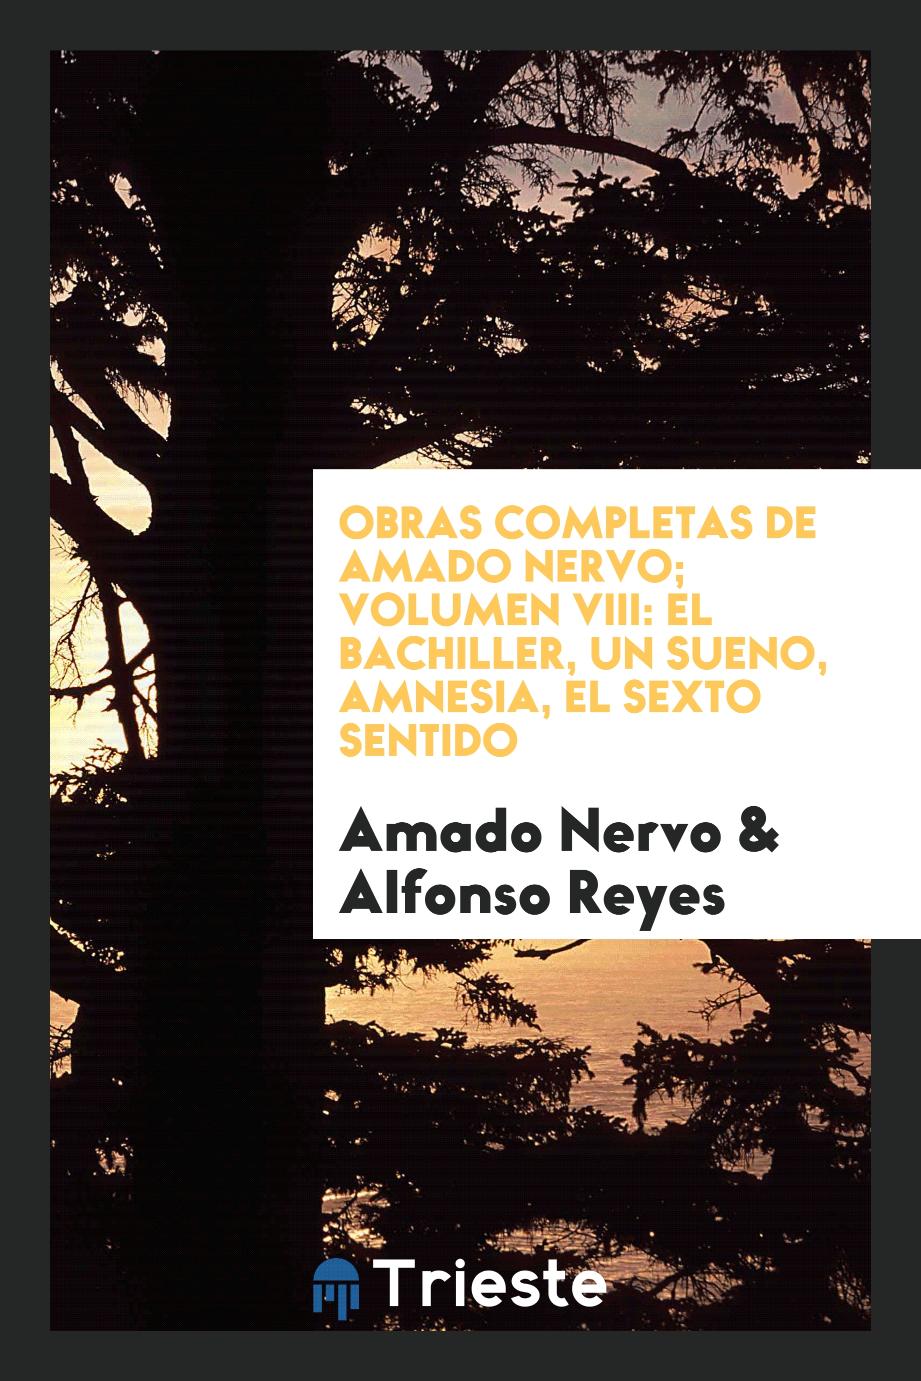 Amado Nervo, Alfonso Reyes - Obras completas de Amado Nervo; Volumen VIII: El Bachiller, un sueno, amnesia, el sexto sentido